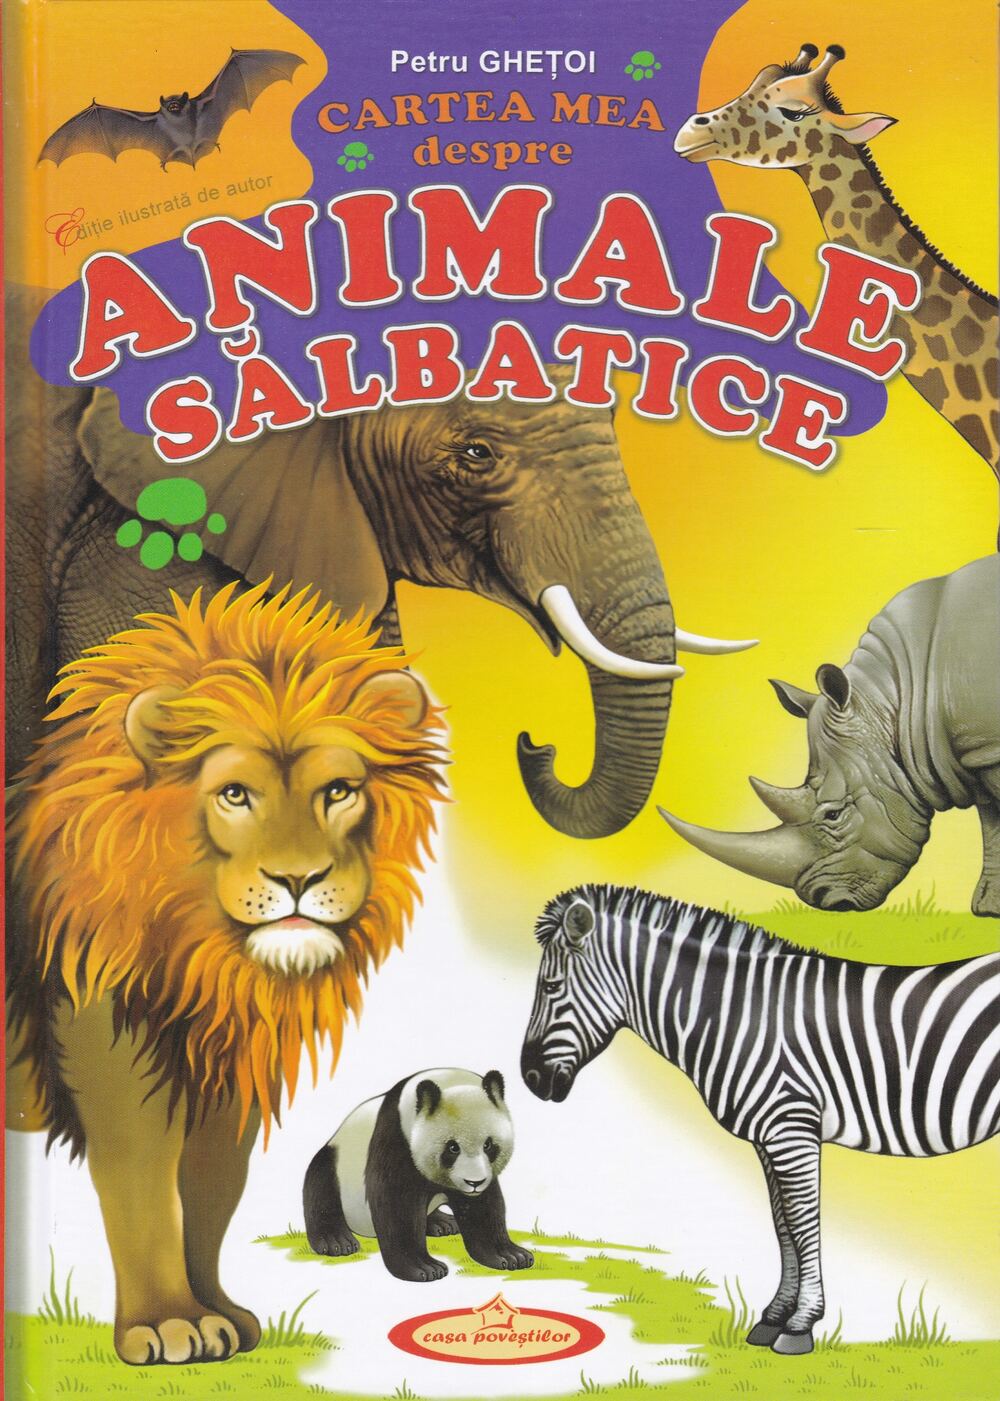 Cartea mea despre animale sălbatice